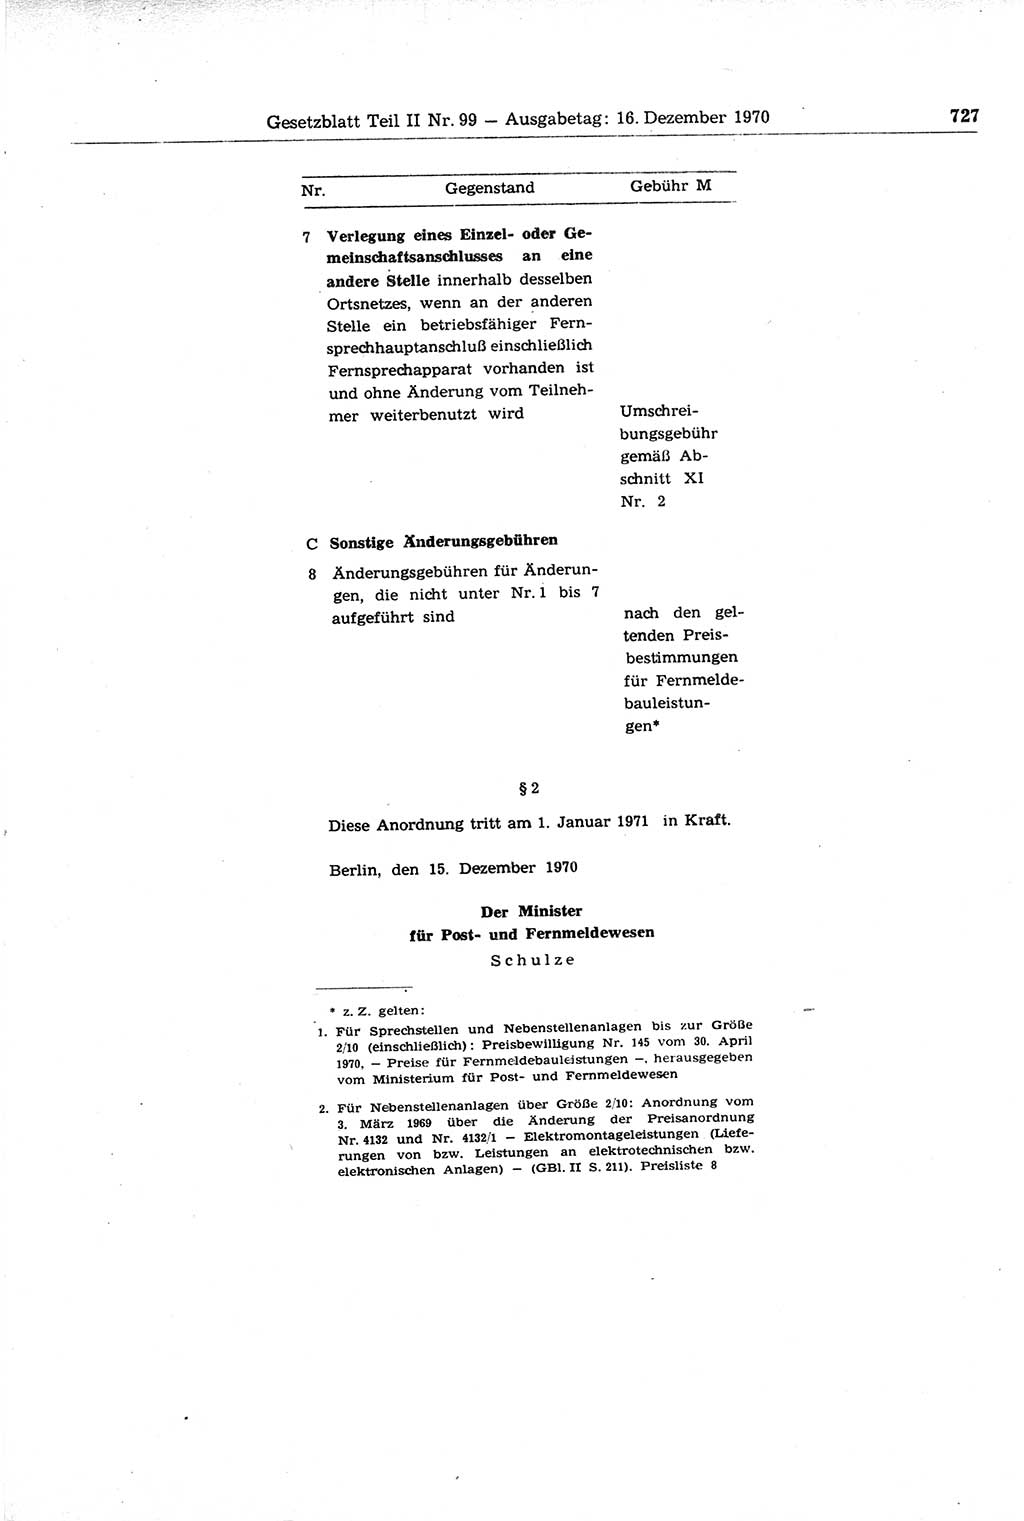 Gesetzblatt (GBl.) der Deutschen Demokratischen Republik (DDR) Teil ⅠⅠ 1970, Seite 727 (GBl. DDR ⅠⅠ 1970, S. 727)